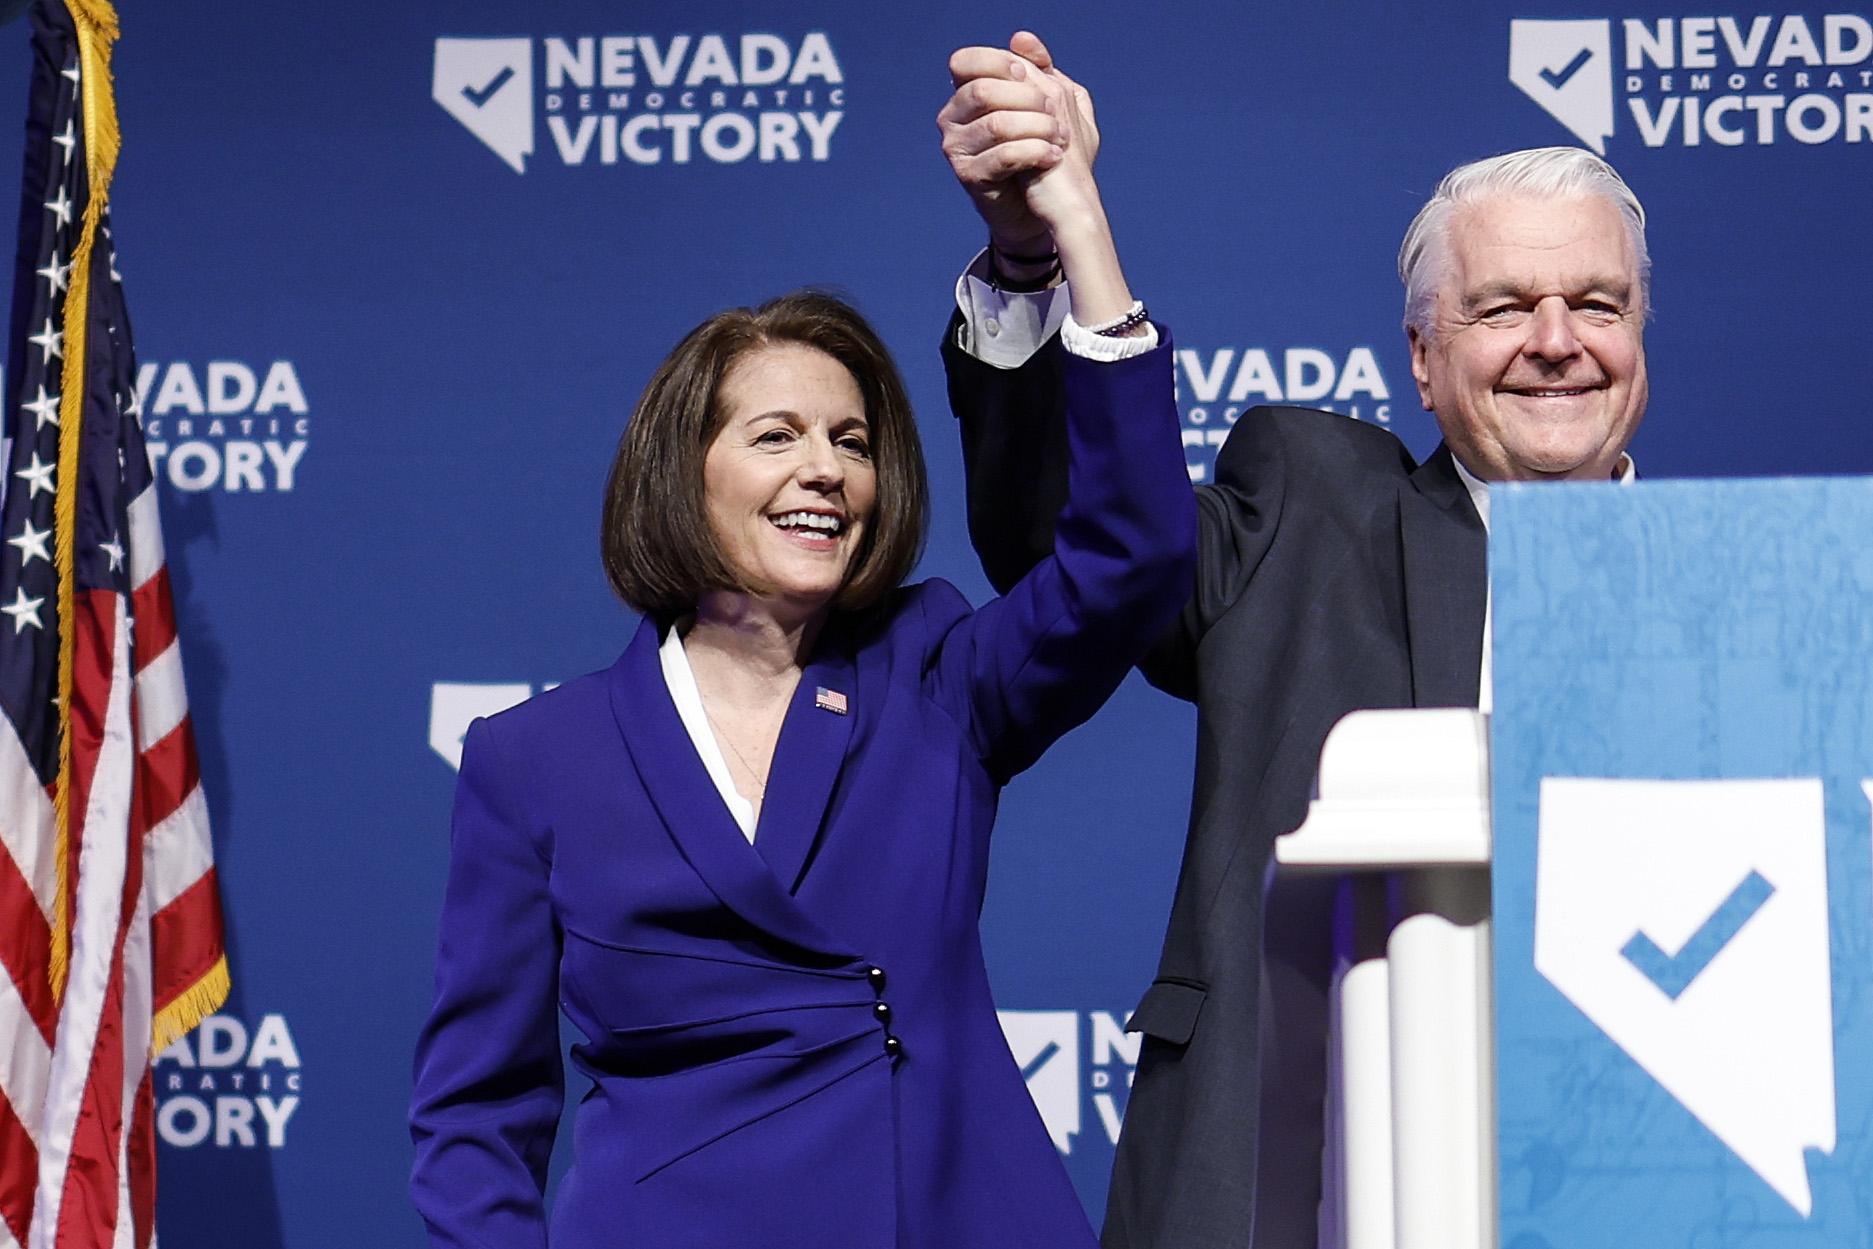 U.S. Sen. Catherine Cortez Masto (D-NV) and Nevada Gov. Steve Sisolak holding hands in the air in celebration.